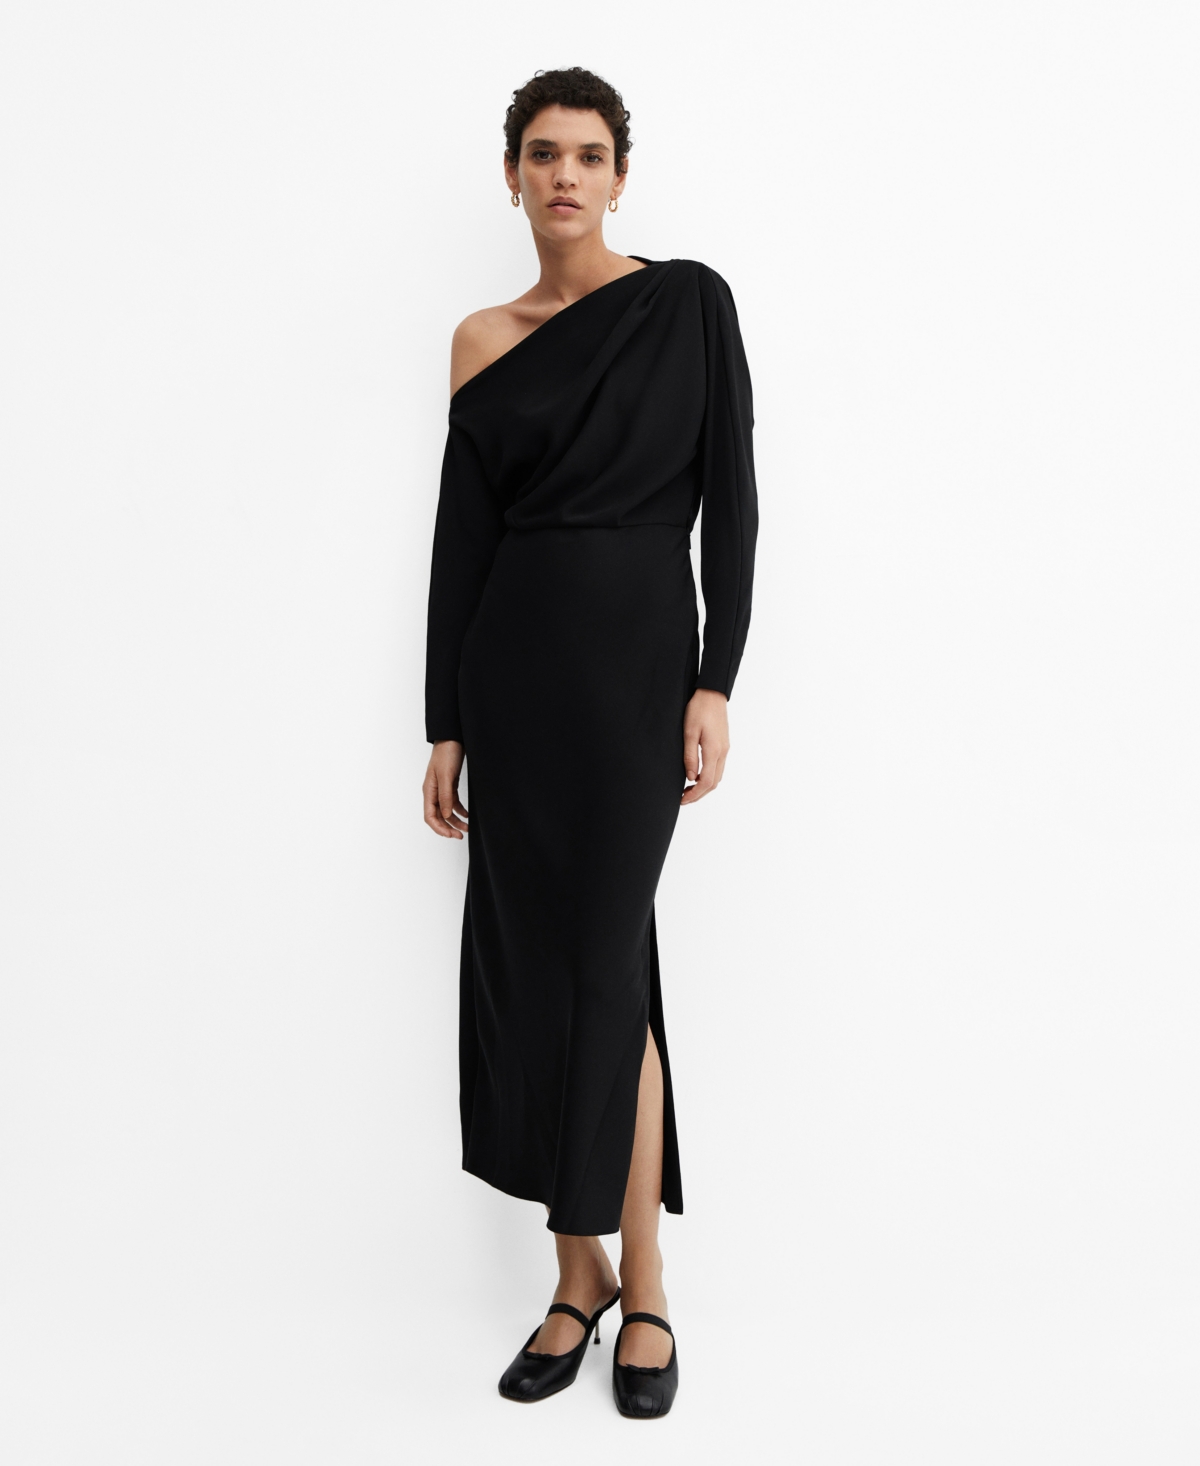 Women's Slit Detail Asymmetrical Dress - Black